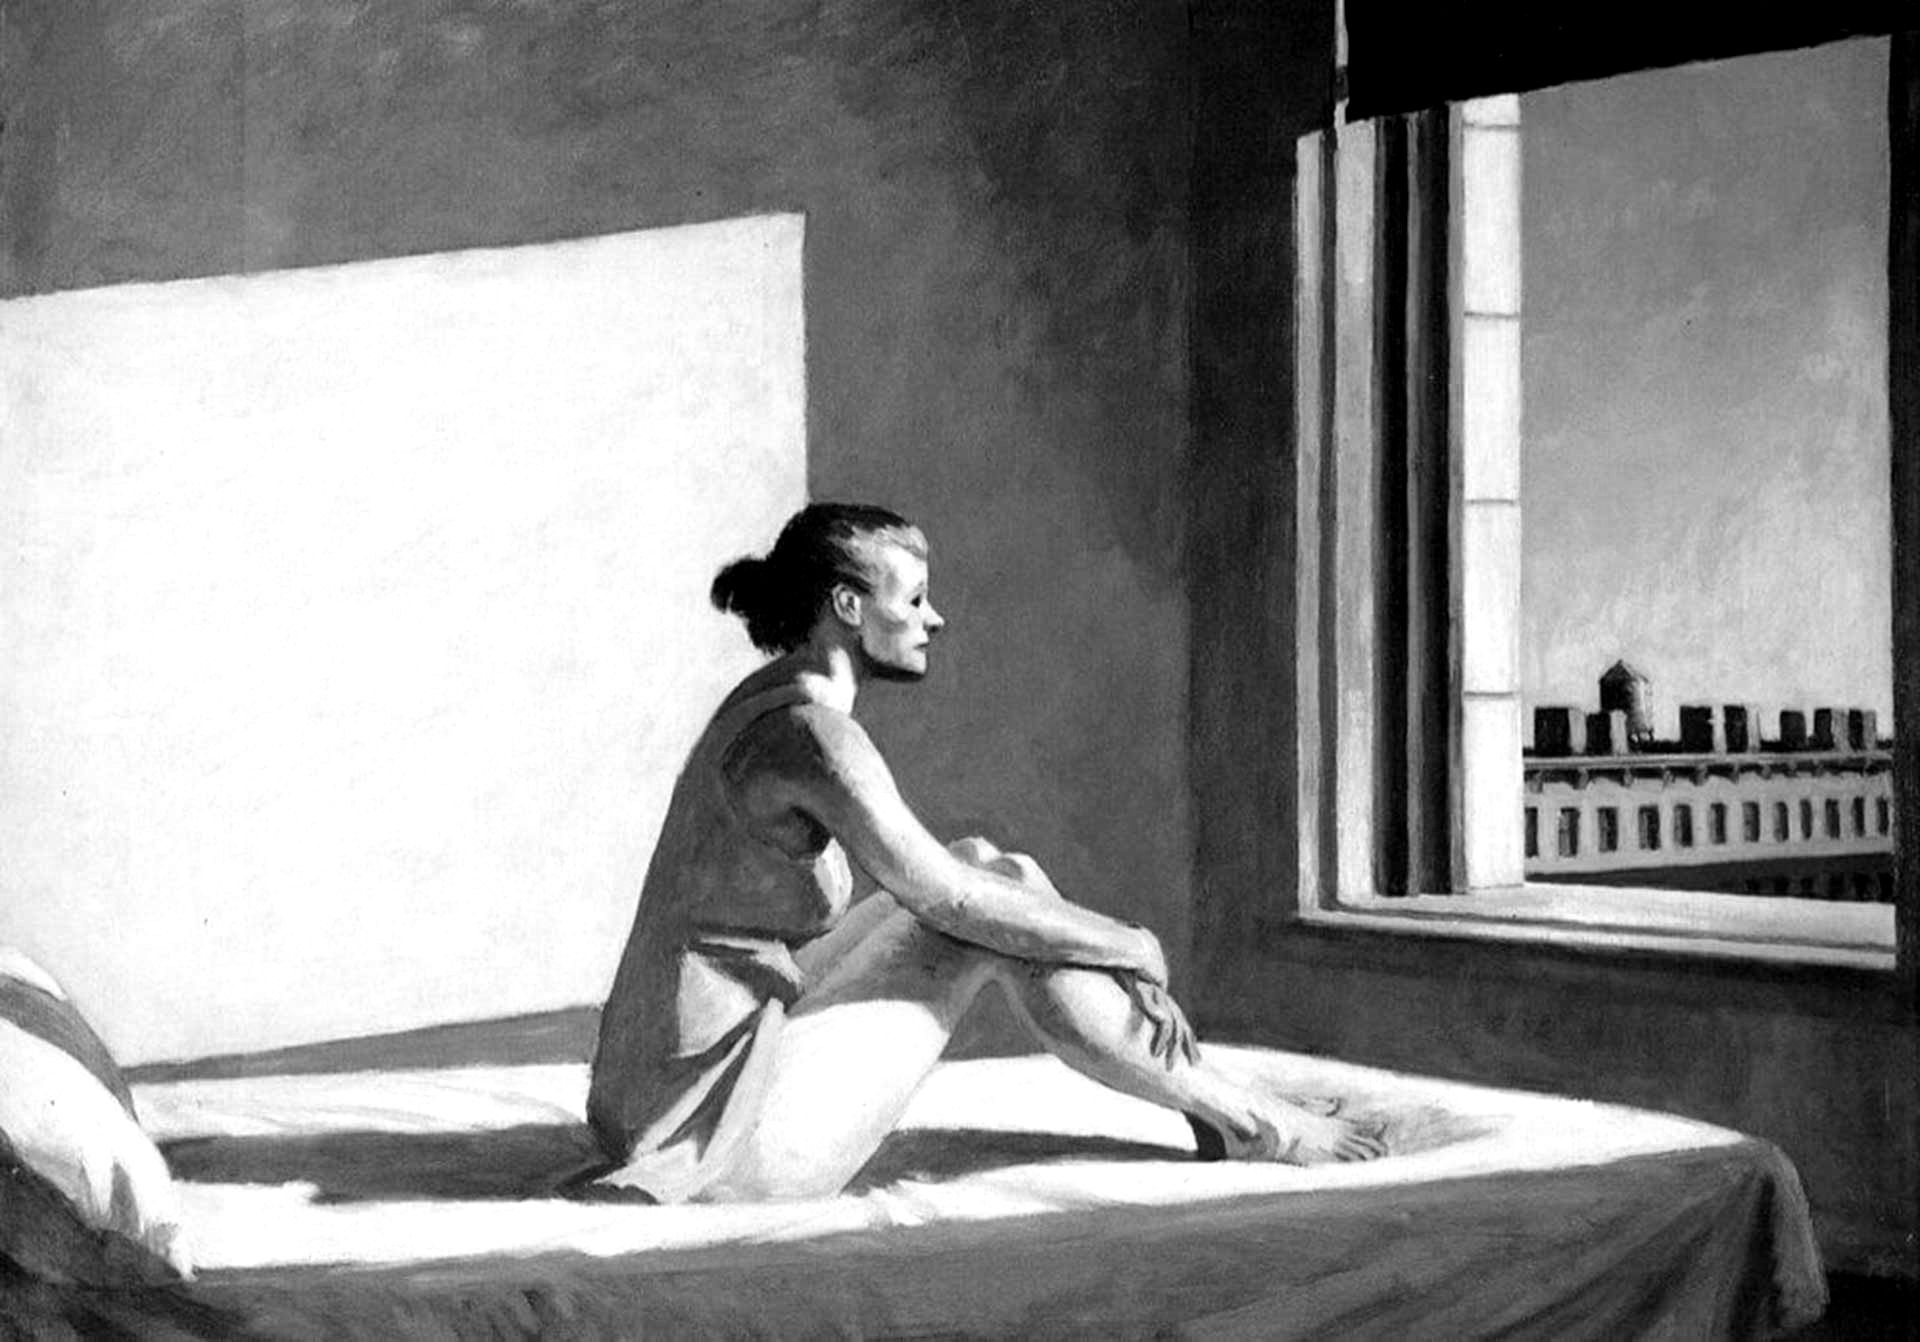 Edward Hopper - Sol de la mañana - copia